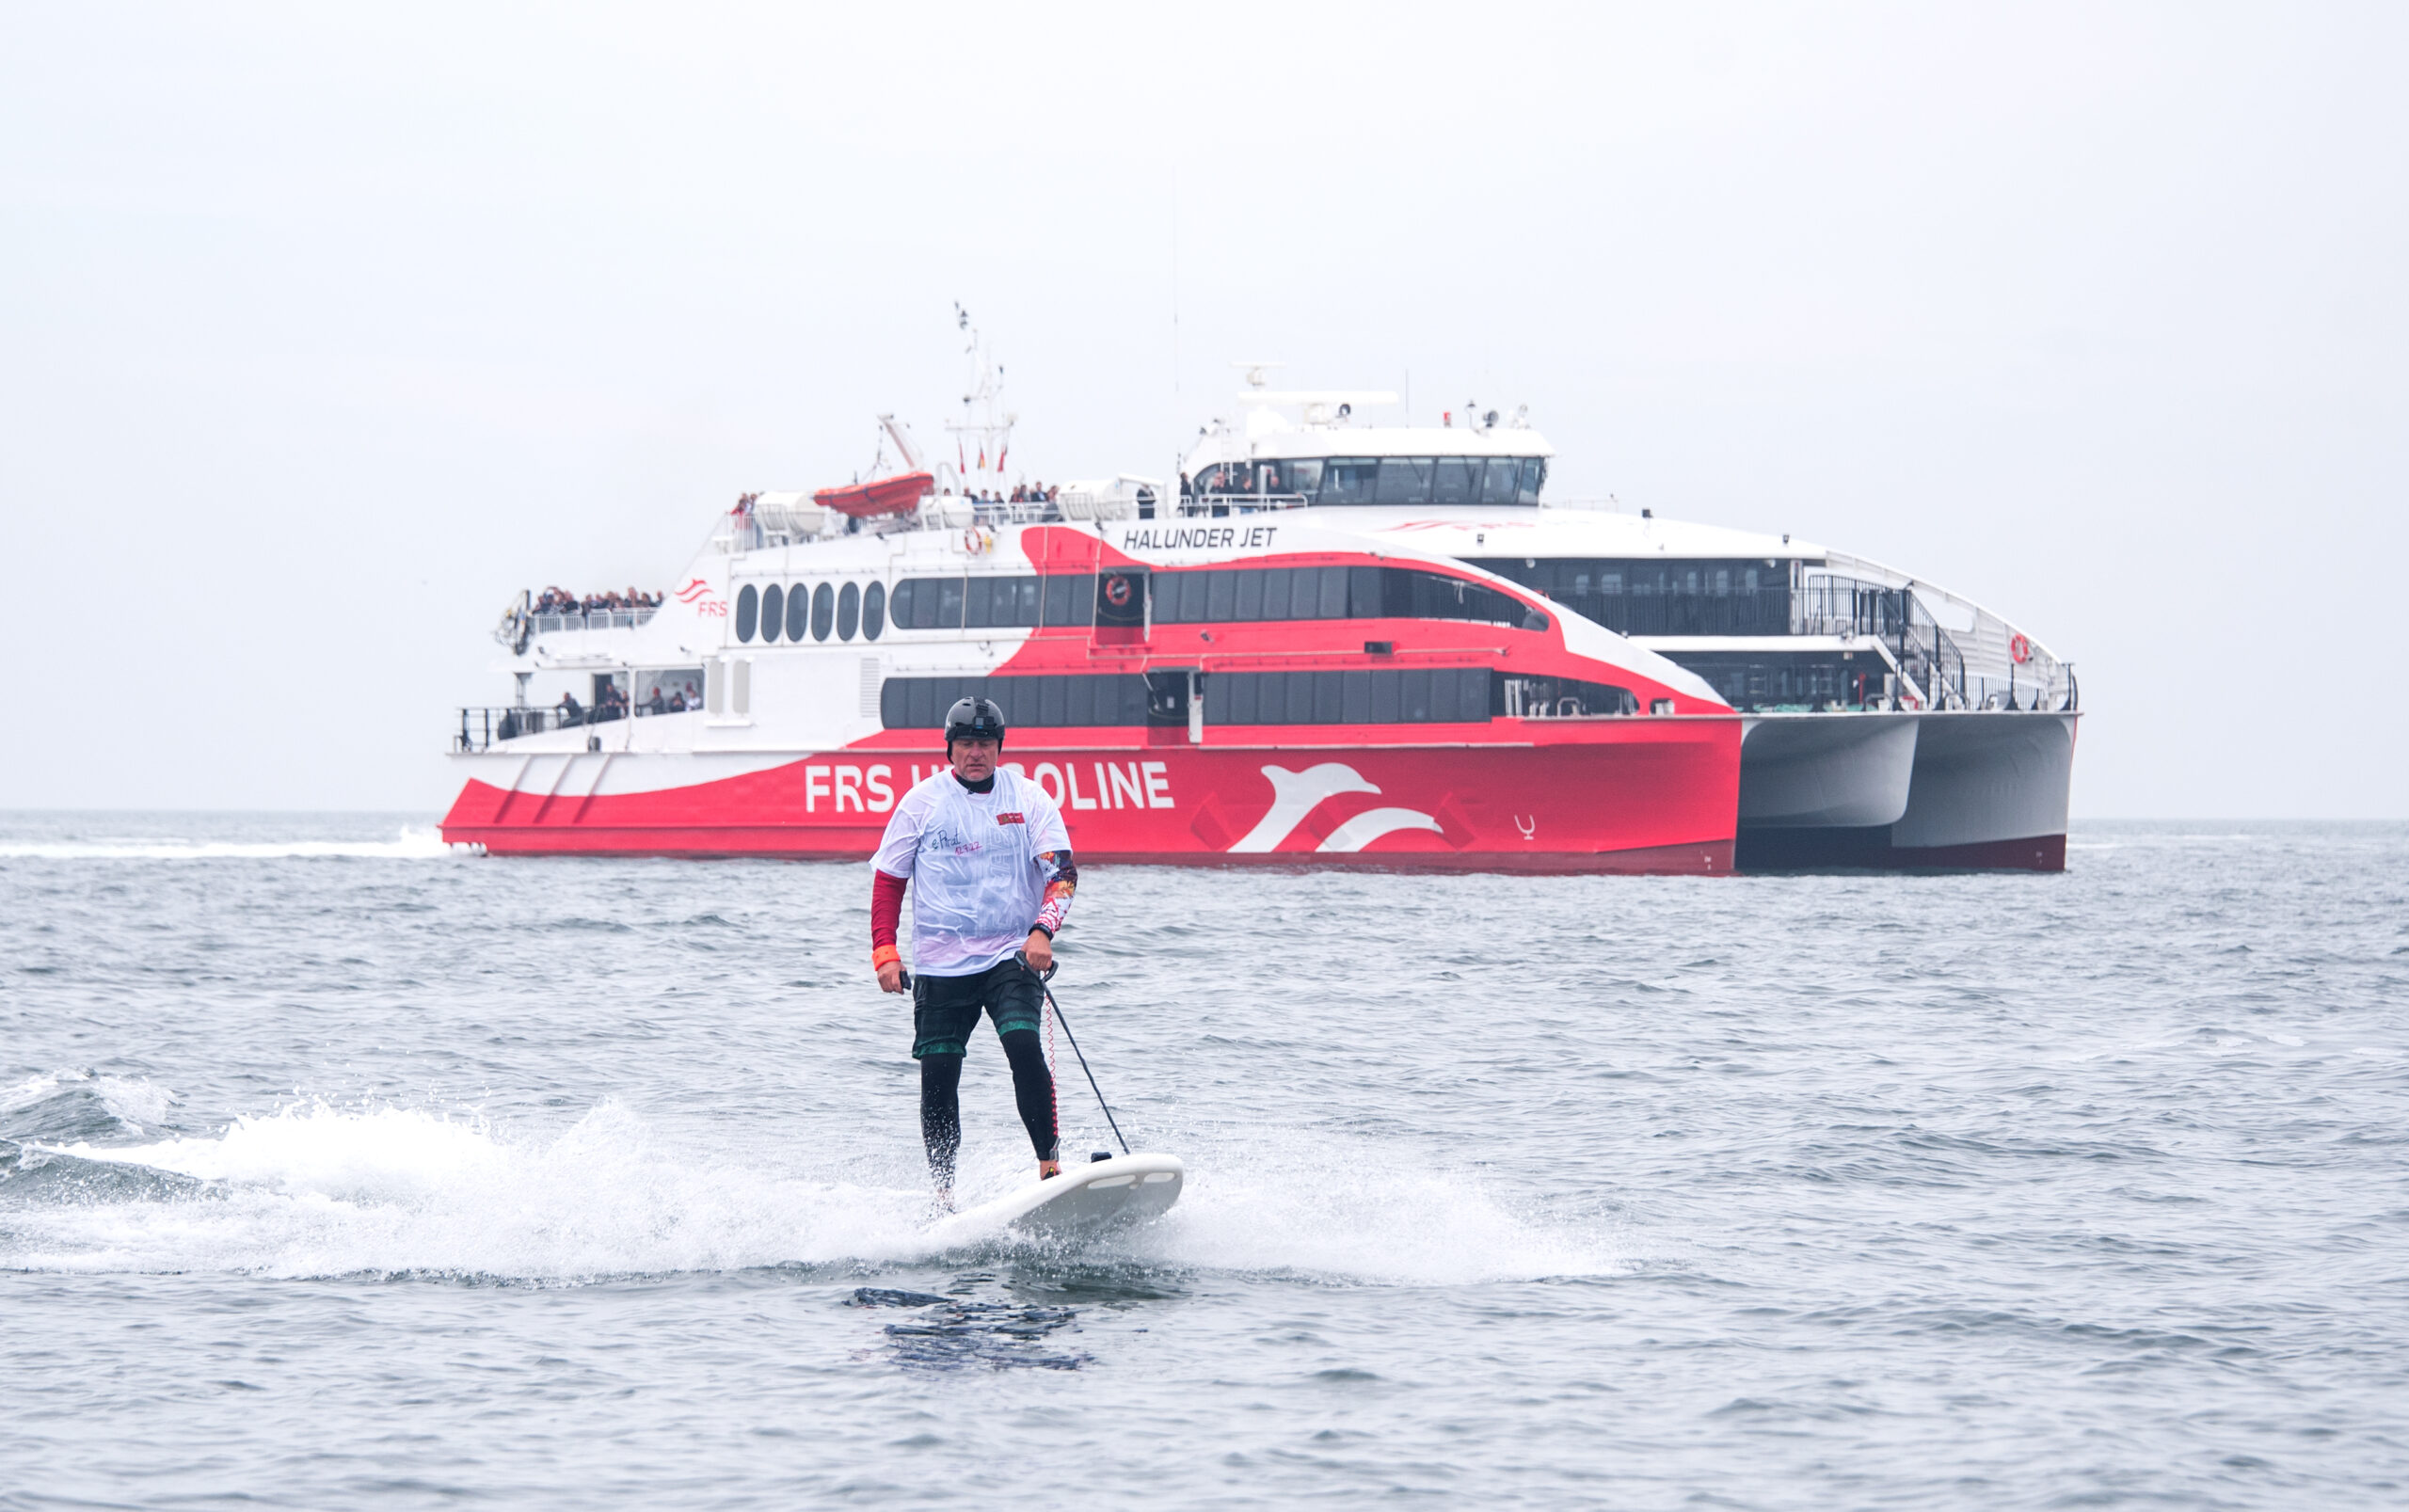 Jörg Singer, Bürgermeister der Insel Helgoland, fährt im Rahmen einer Aktion gegen Plastikmüll im Meer auf einem E-Surfboard neben dem Katamaran „Halunder Jet”.